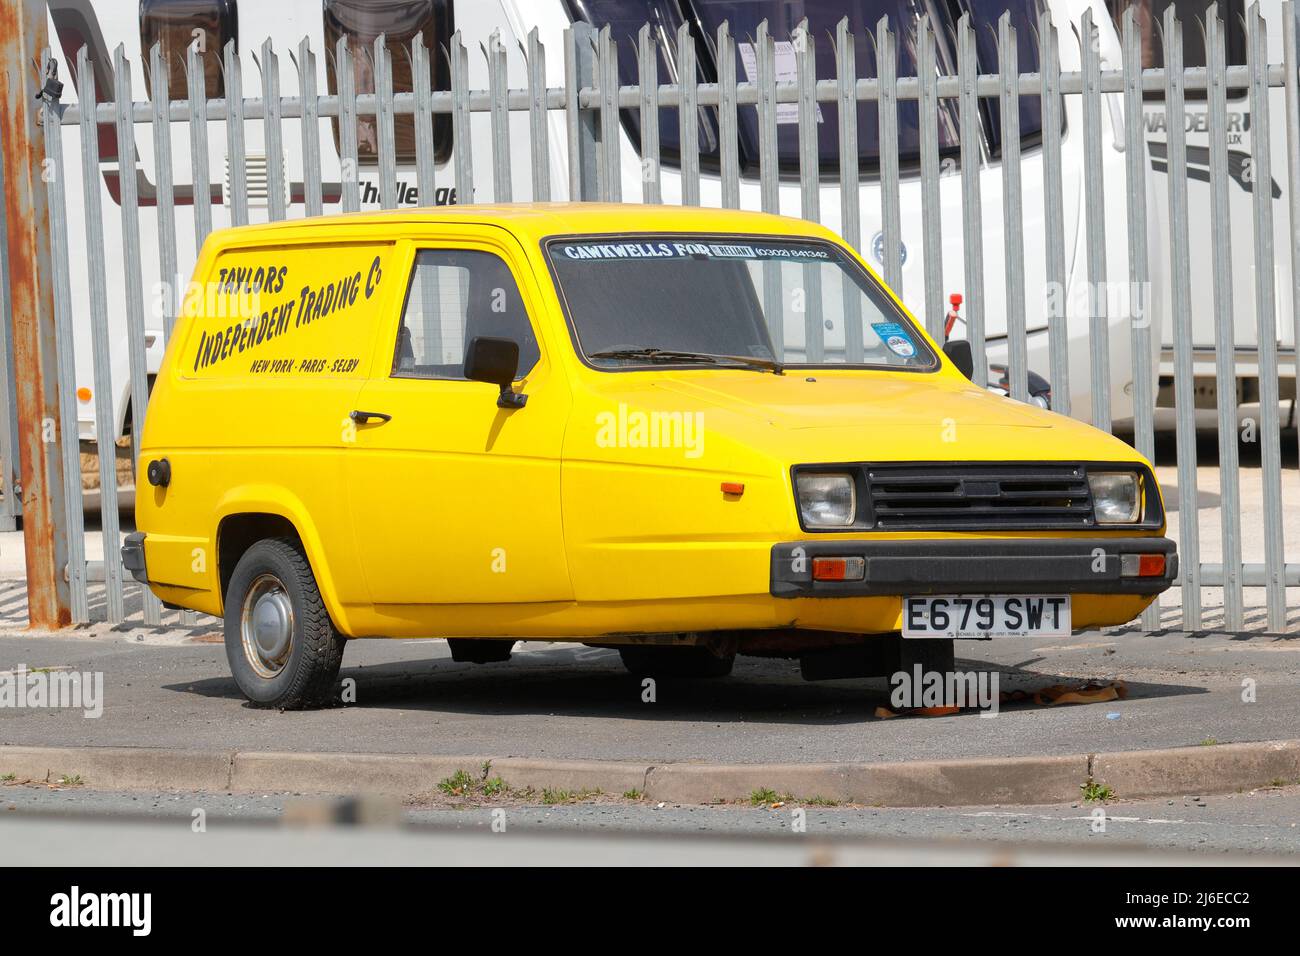 Une voiture à roues jaune reliant Robin 3 qui ressemble à Del Boys de la série télévisée 'Only Fools & Horses Banque D'Images